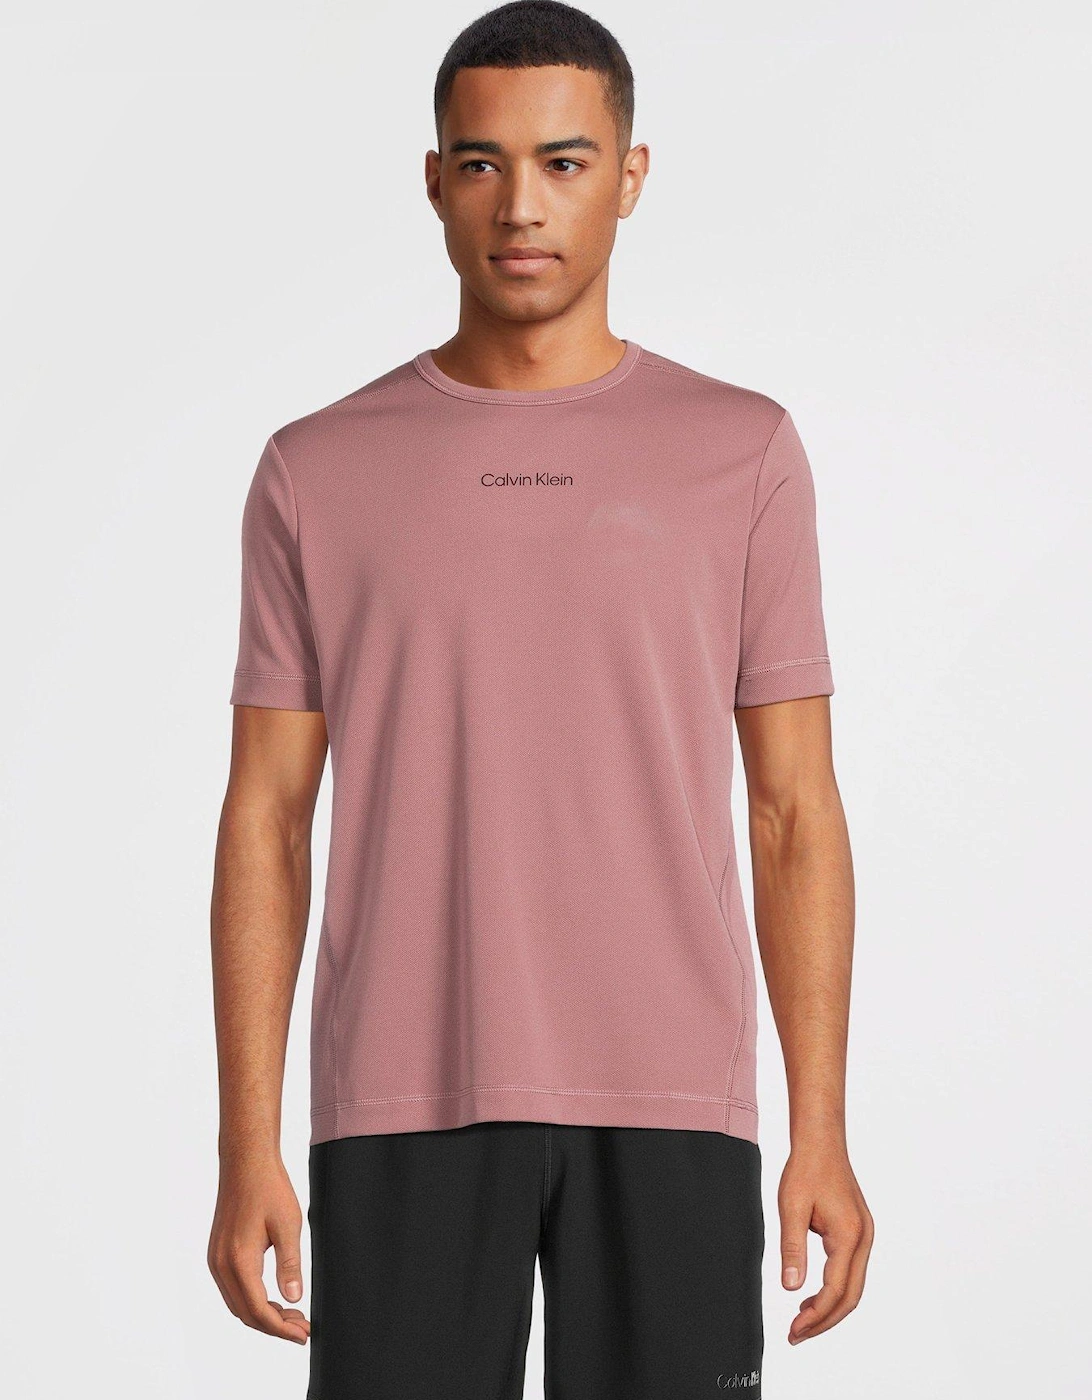 CK Sport Short Sleeve T-shirt - Dark Pink , 6 of 5